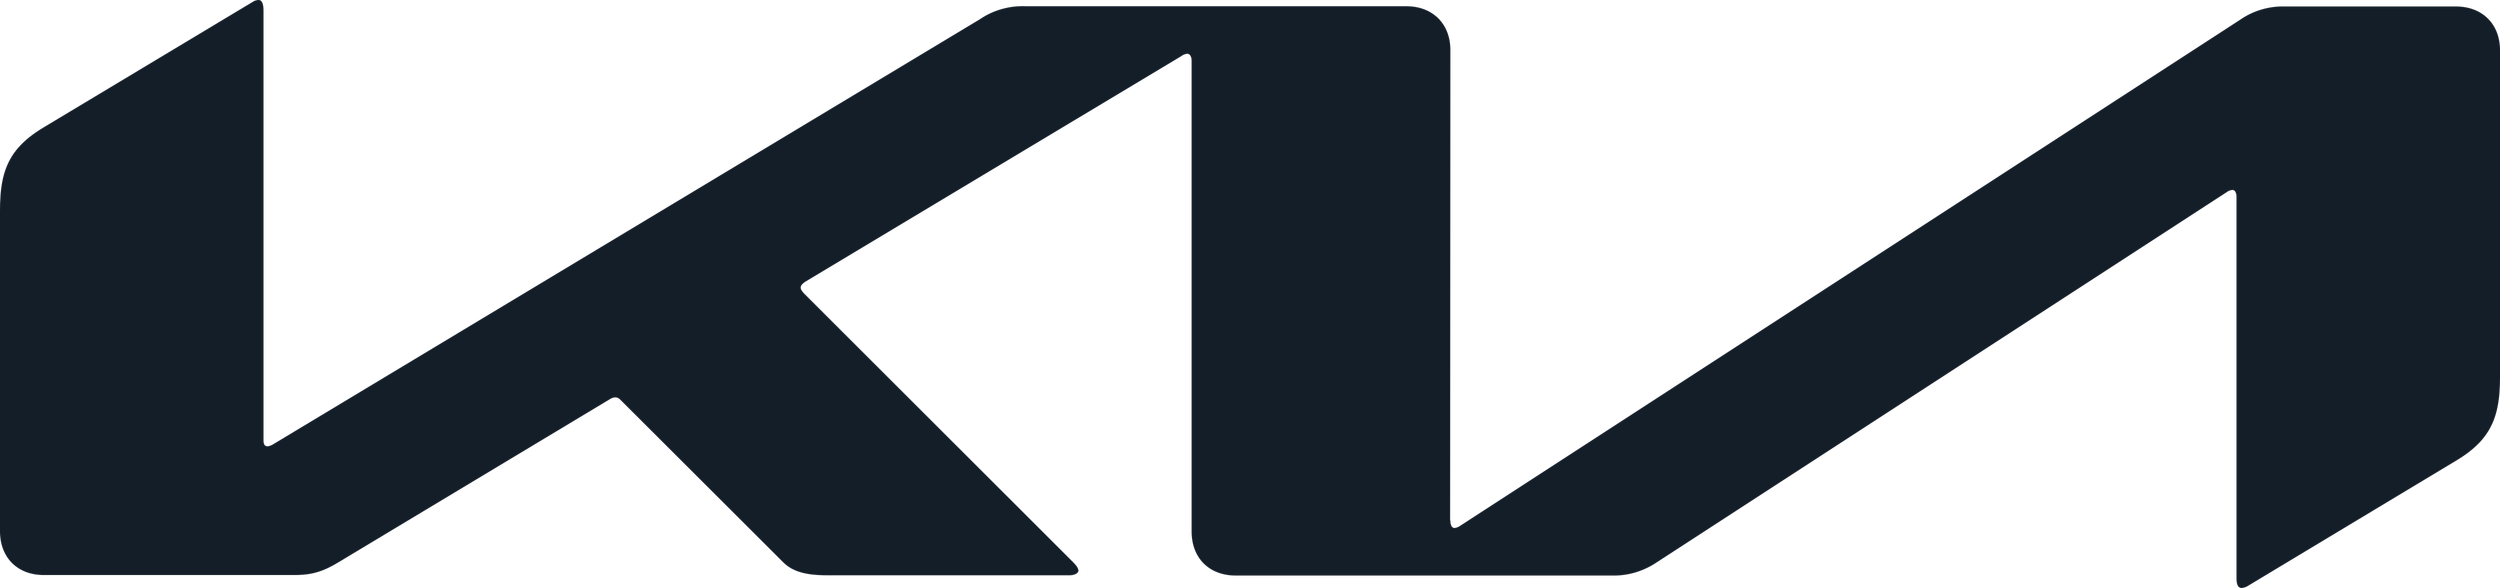 Kia_Logo_2021.png